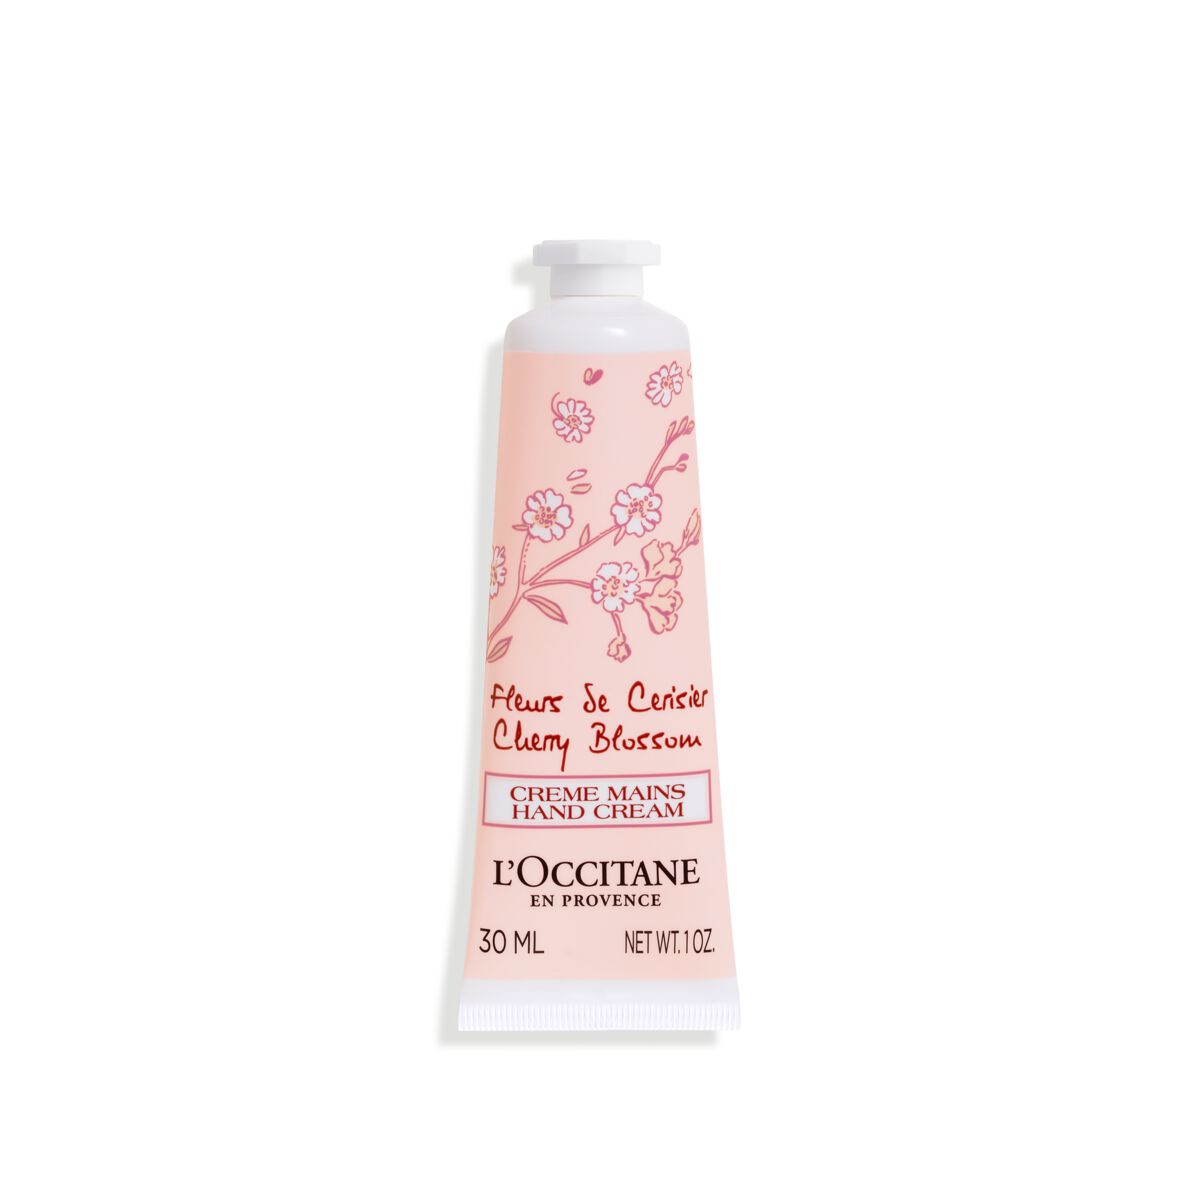 L'occitane Cherry Blossom Hand Cream 1 Fl oz In White